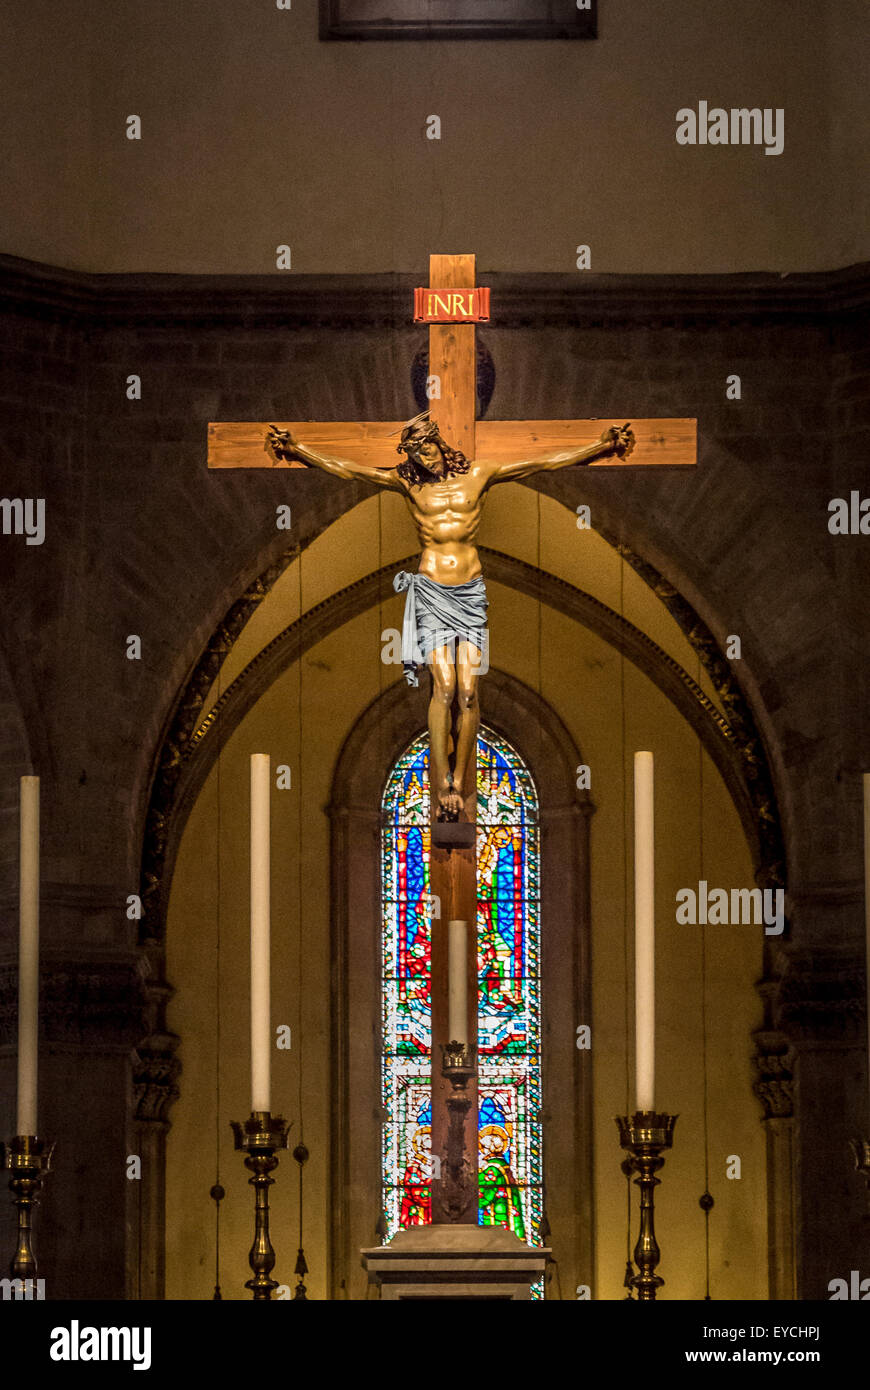 Altare e crocifisso nella Cattedrale di Firenze. Firenze, Italia. Foto Stock